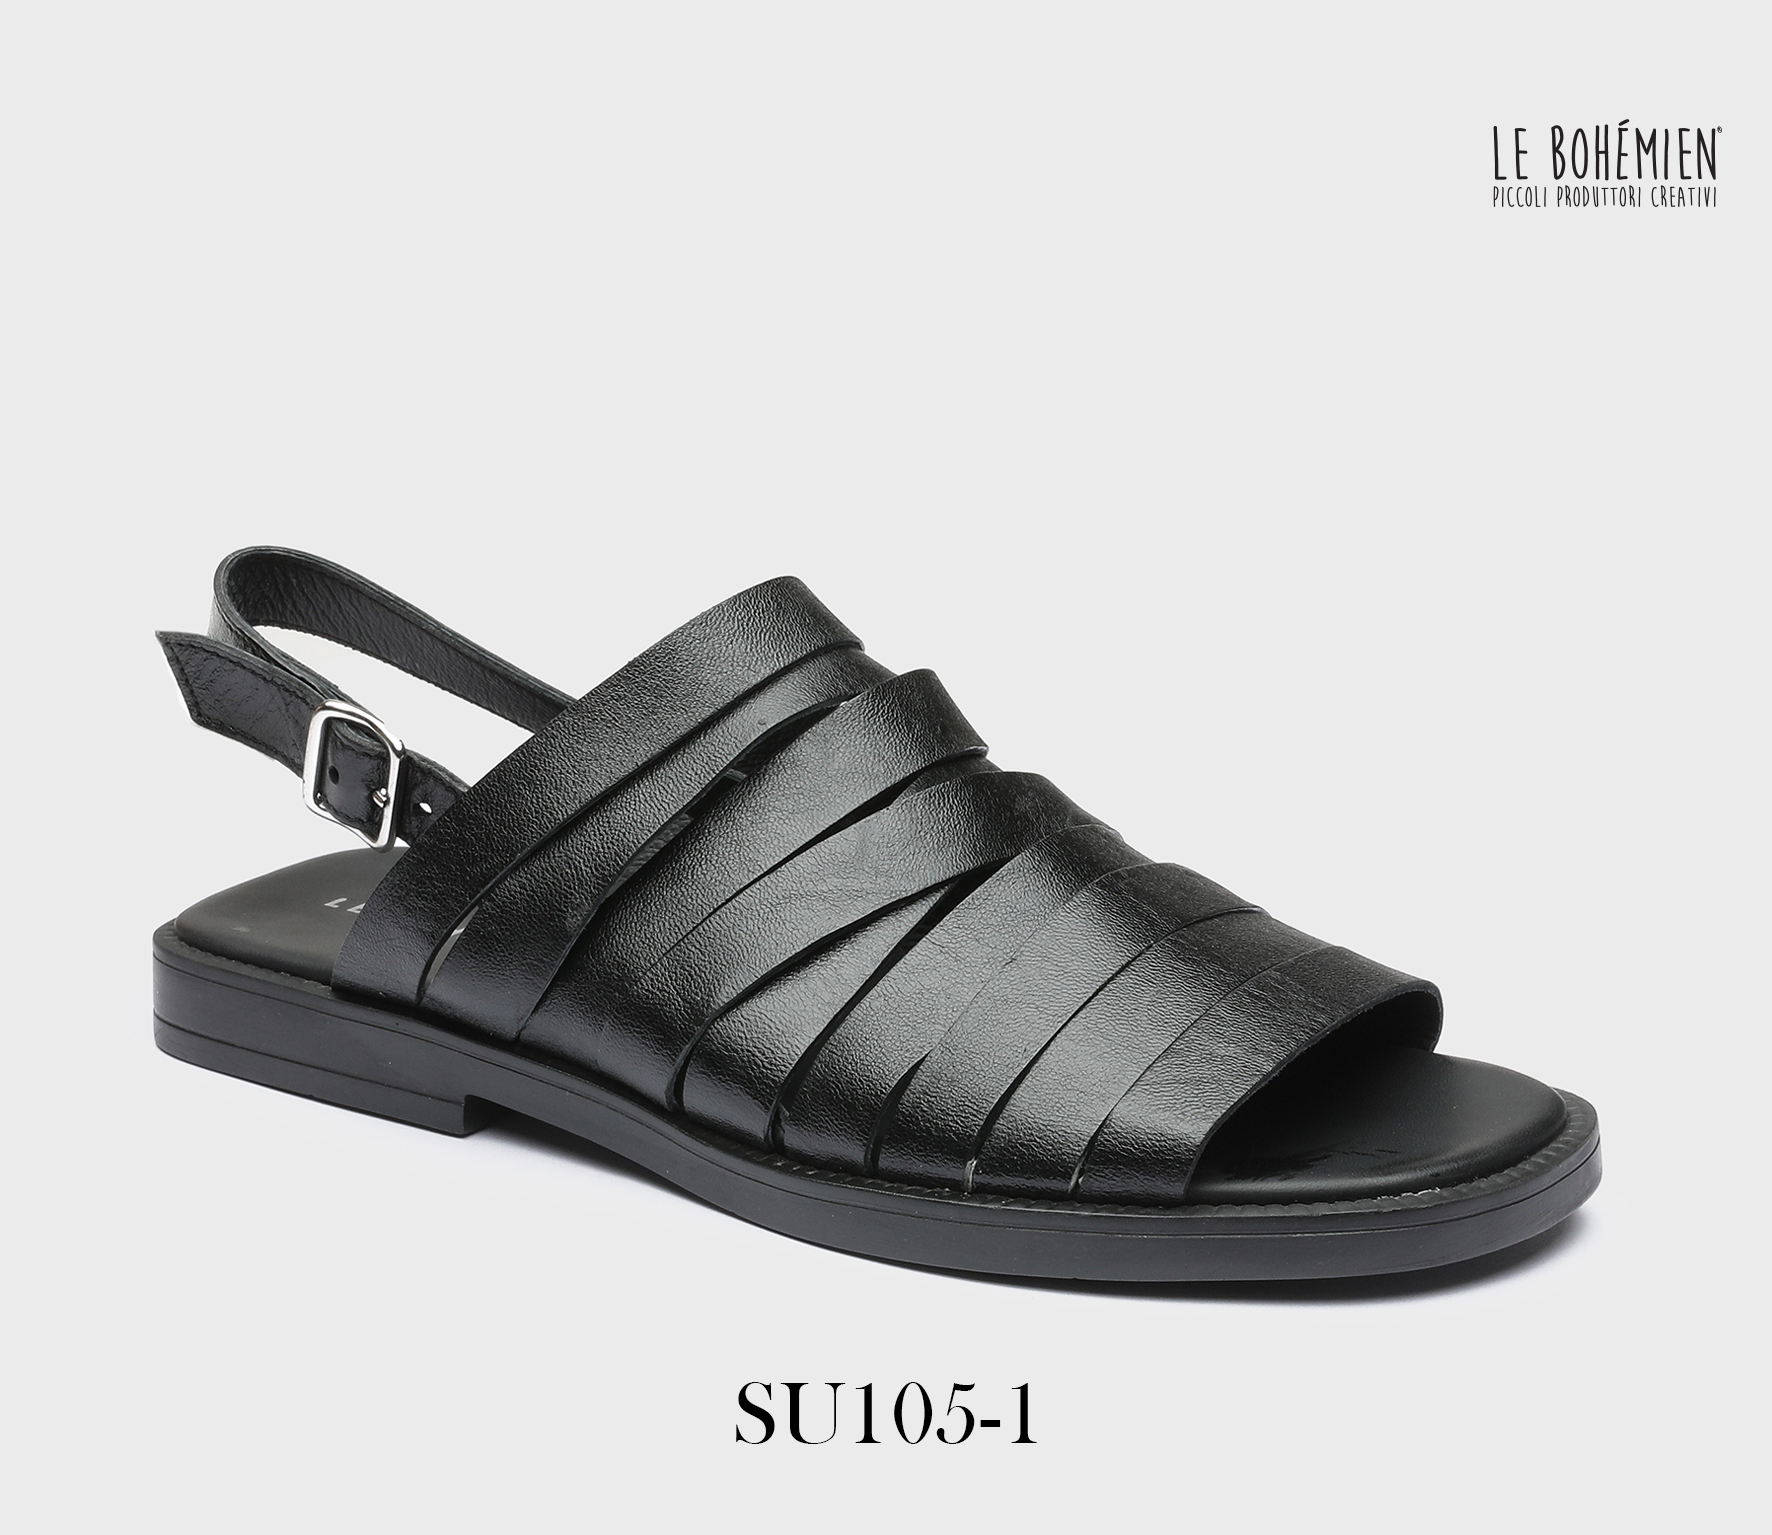 Men's Sandals Shoes SU105-1